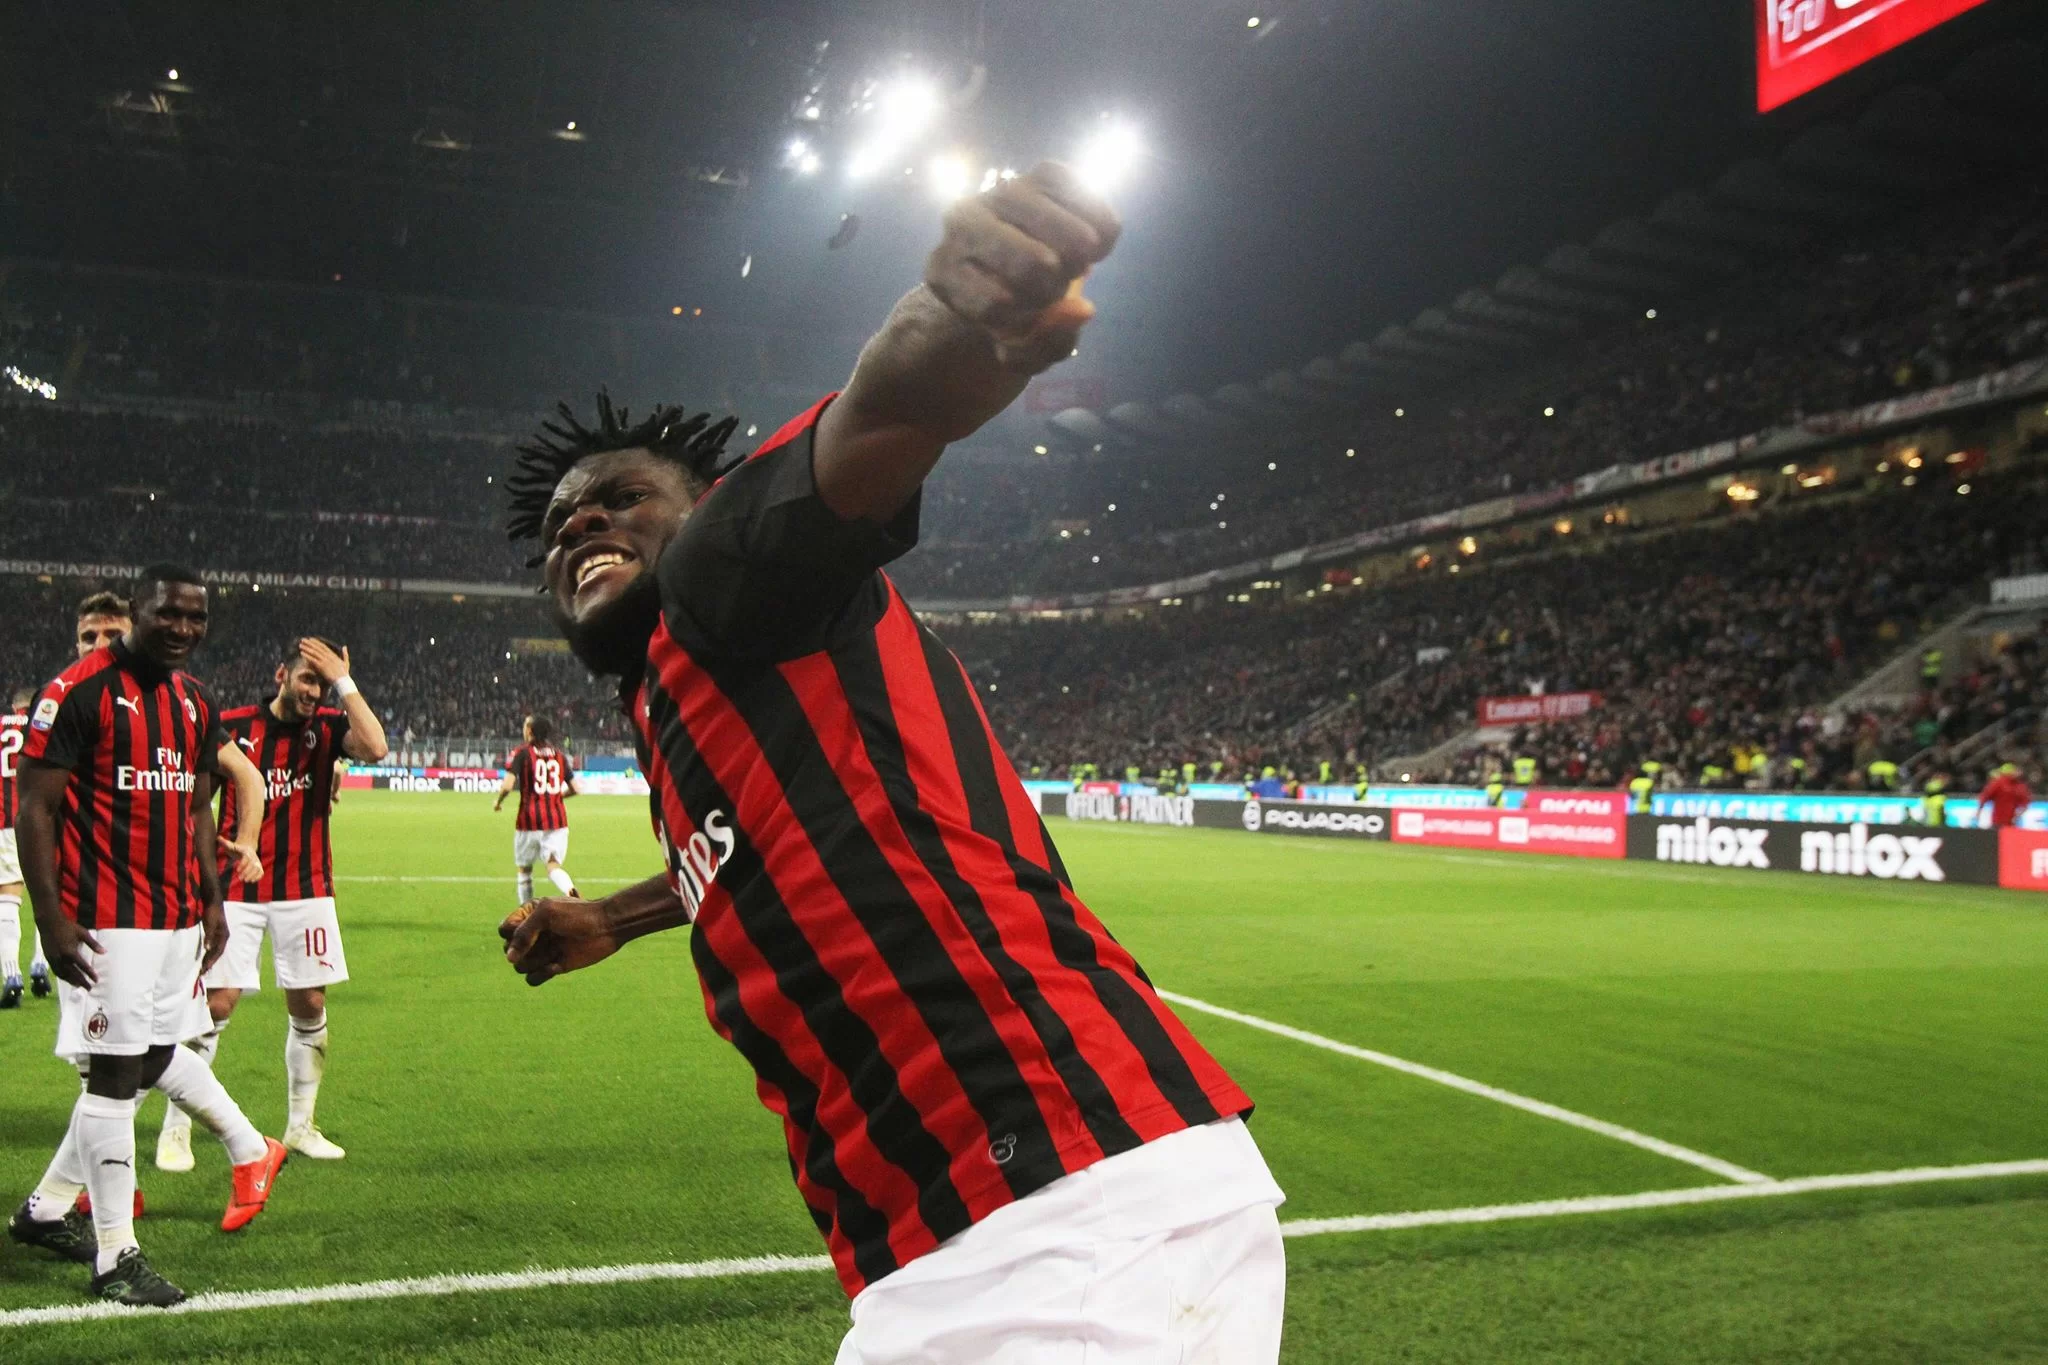 Il Milan per Kessie: “Condanniamo ogni forma di razzismo, ancora una volta. Il calcio deve unire”